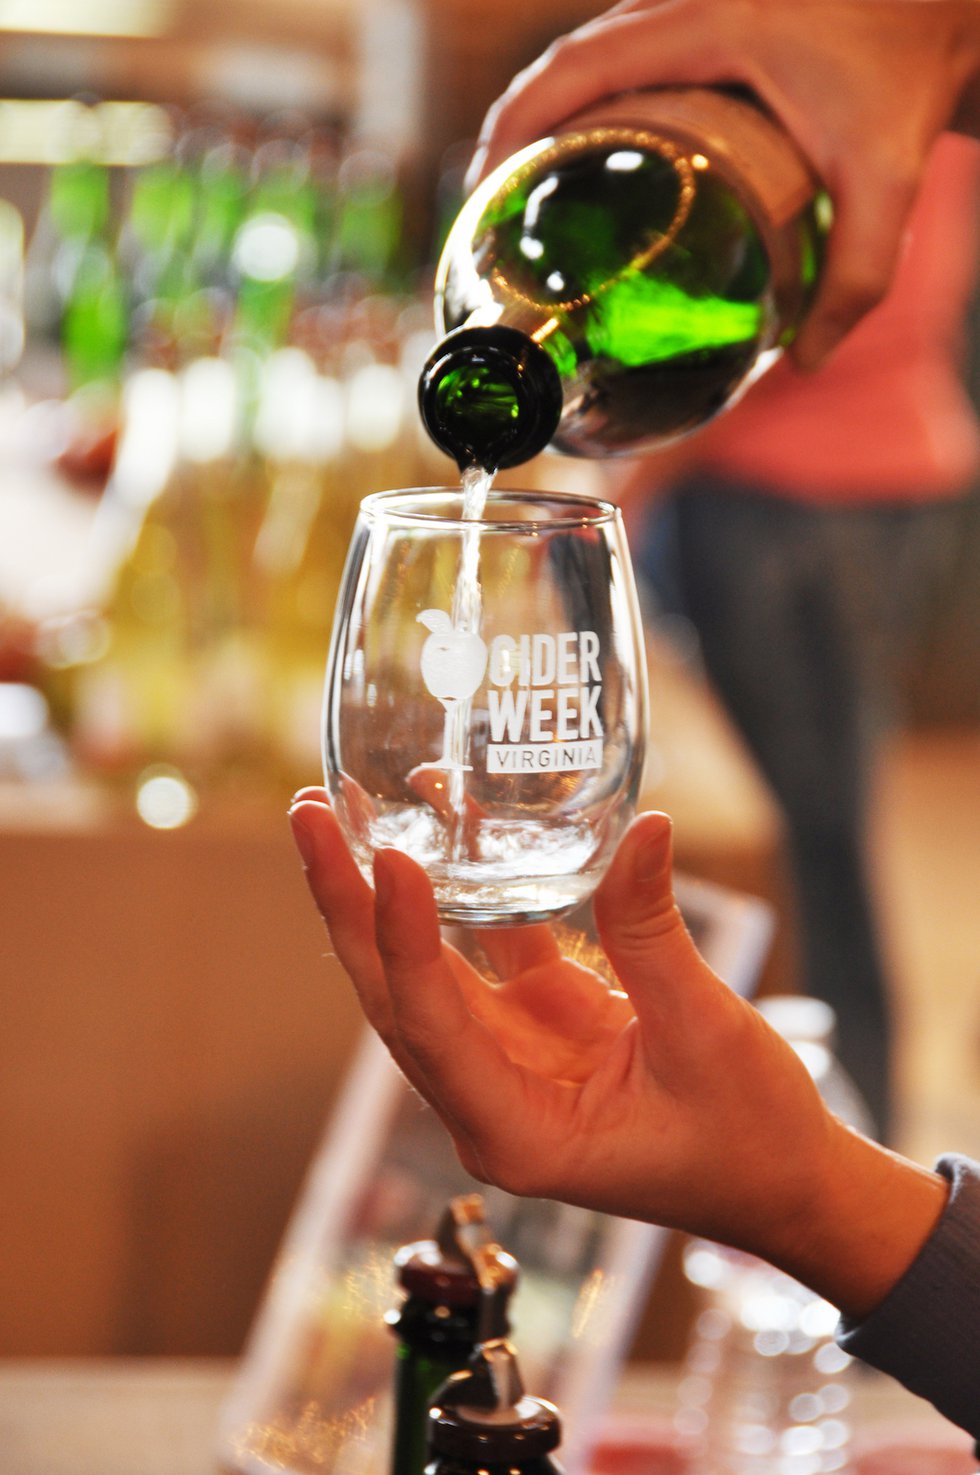 Cider Week Glass Pour - Credit Anne Shelton.jpg